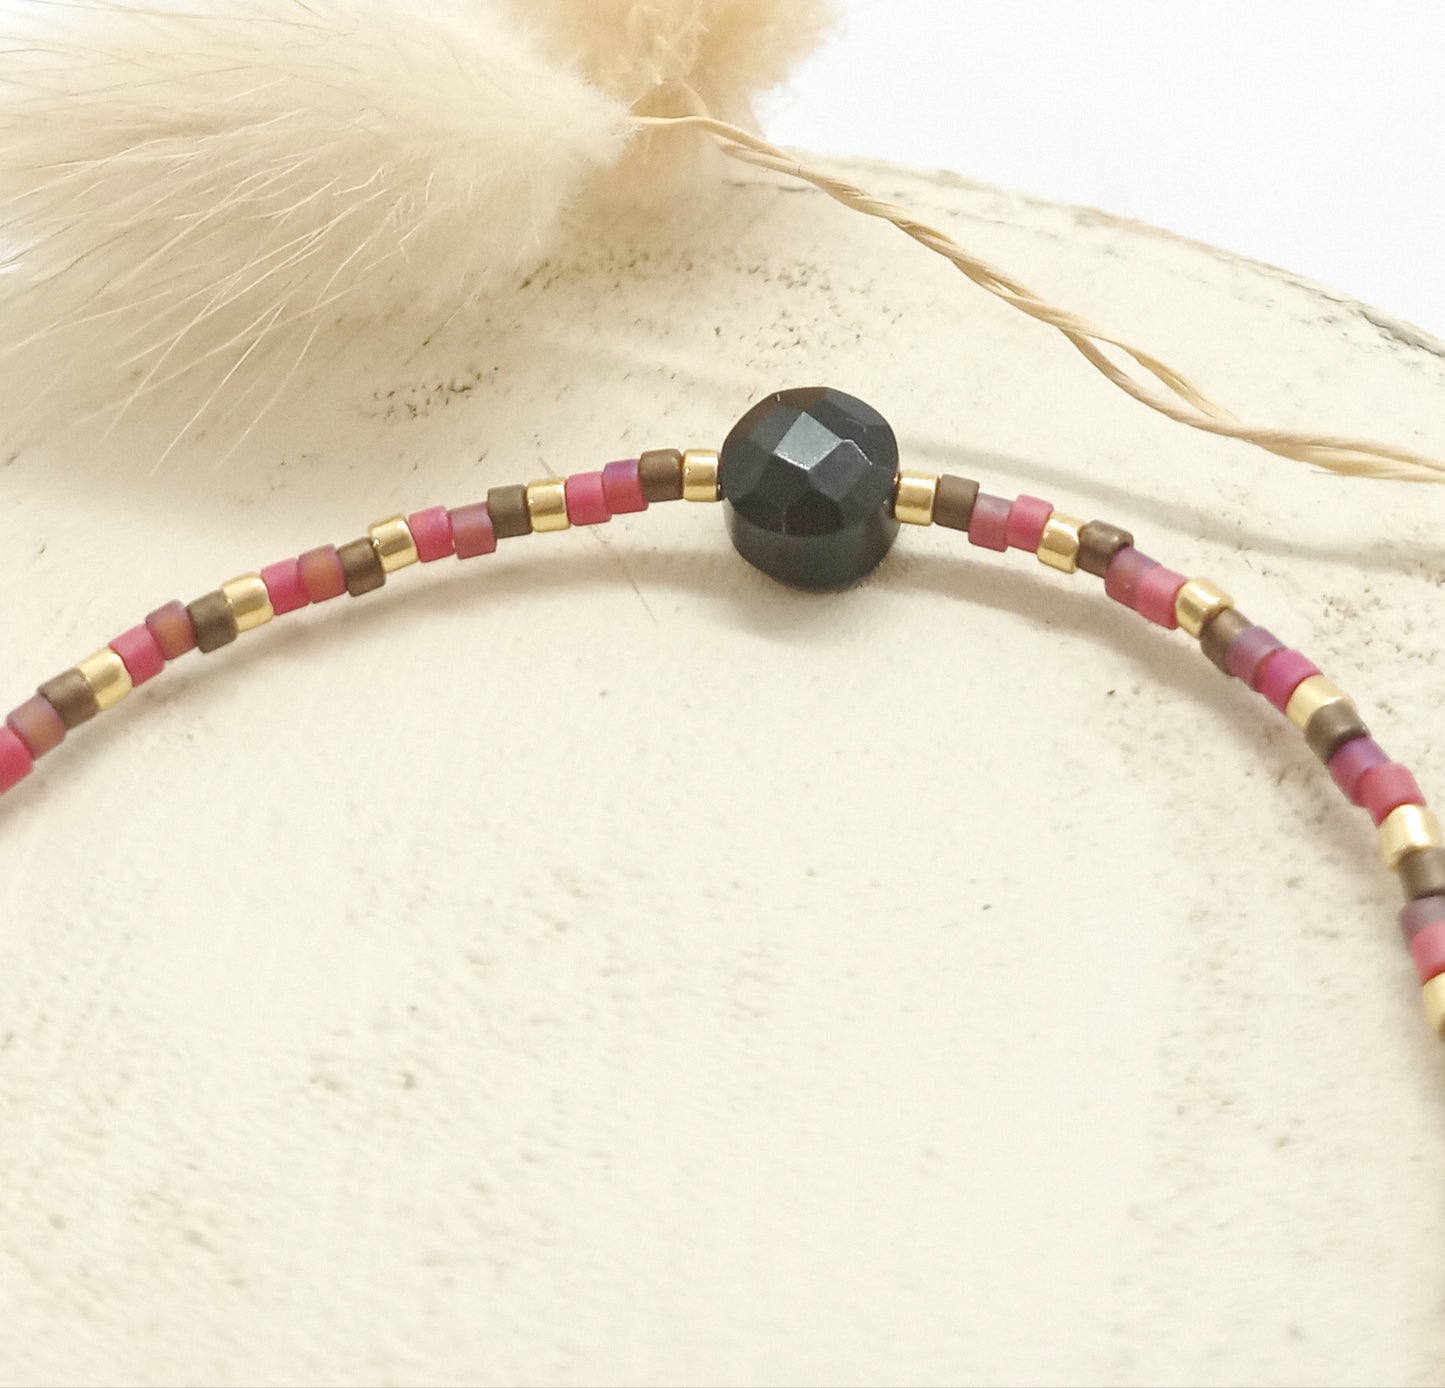 Perles Miyuki roses, marron et dorées et pierre onyx noire sur un rond de bois écru. 